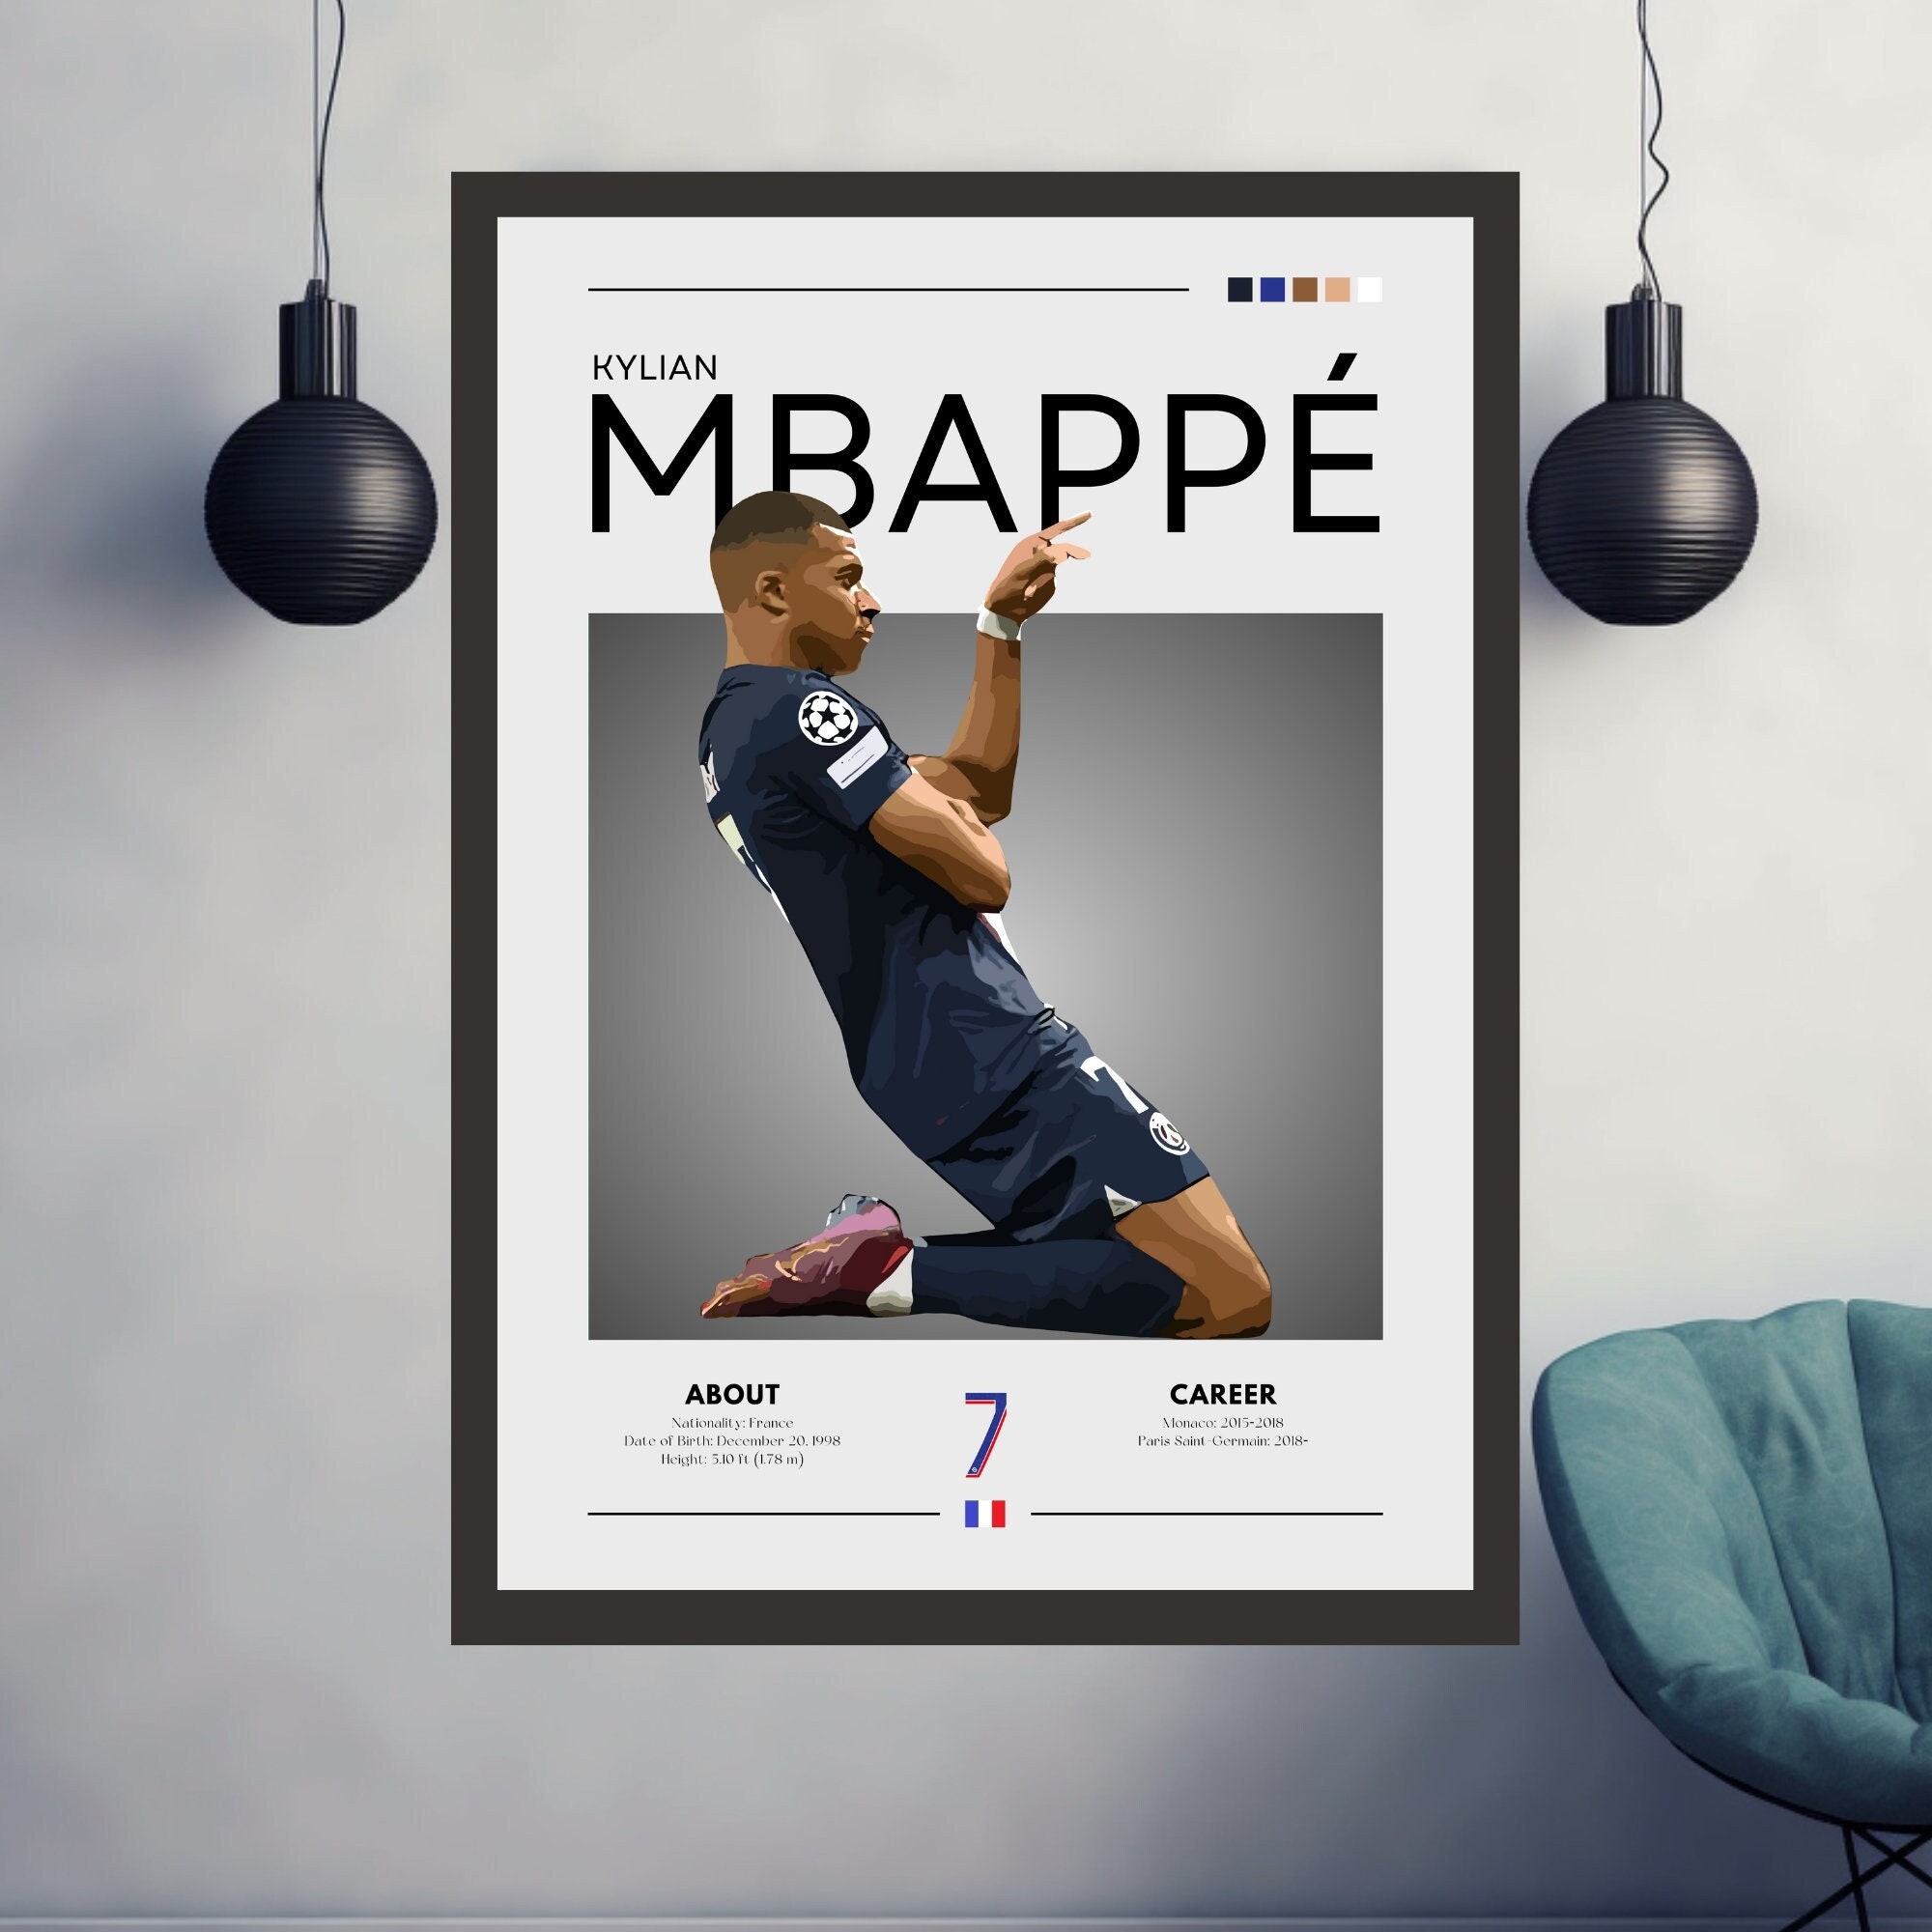 Paris Saint-Germain - Kylian Mbappé Retro Poster limited to 100